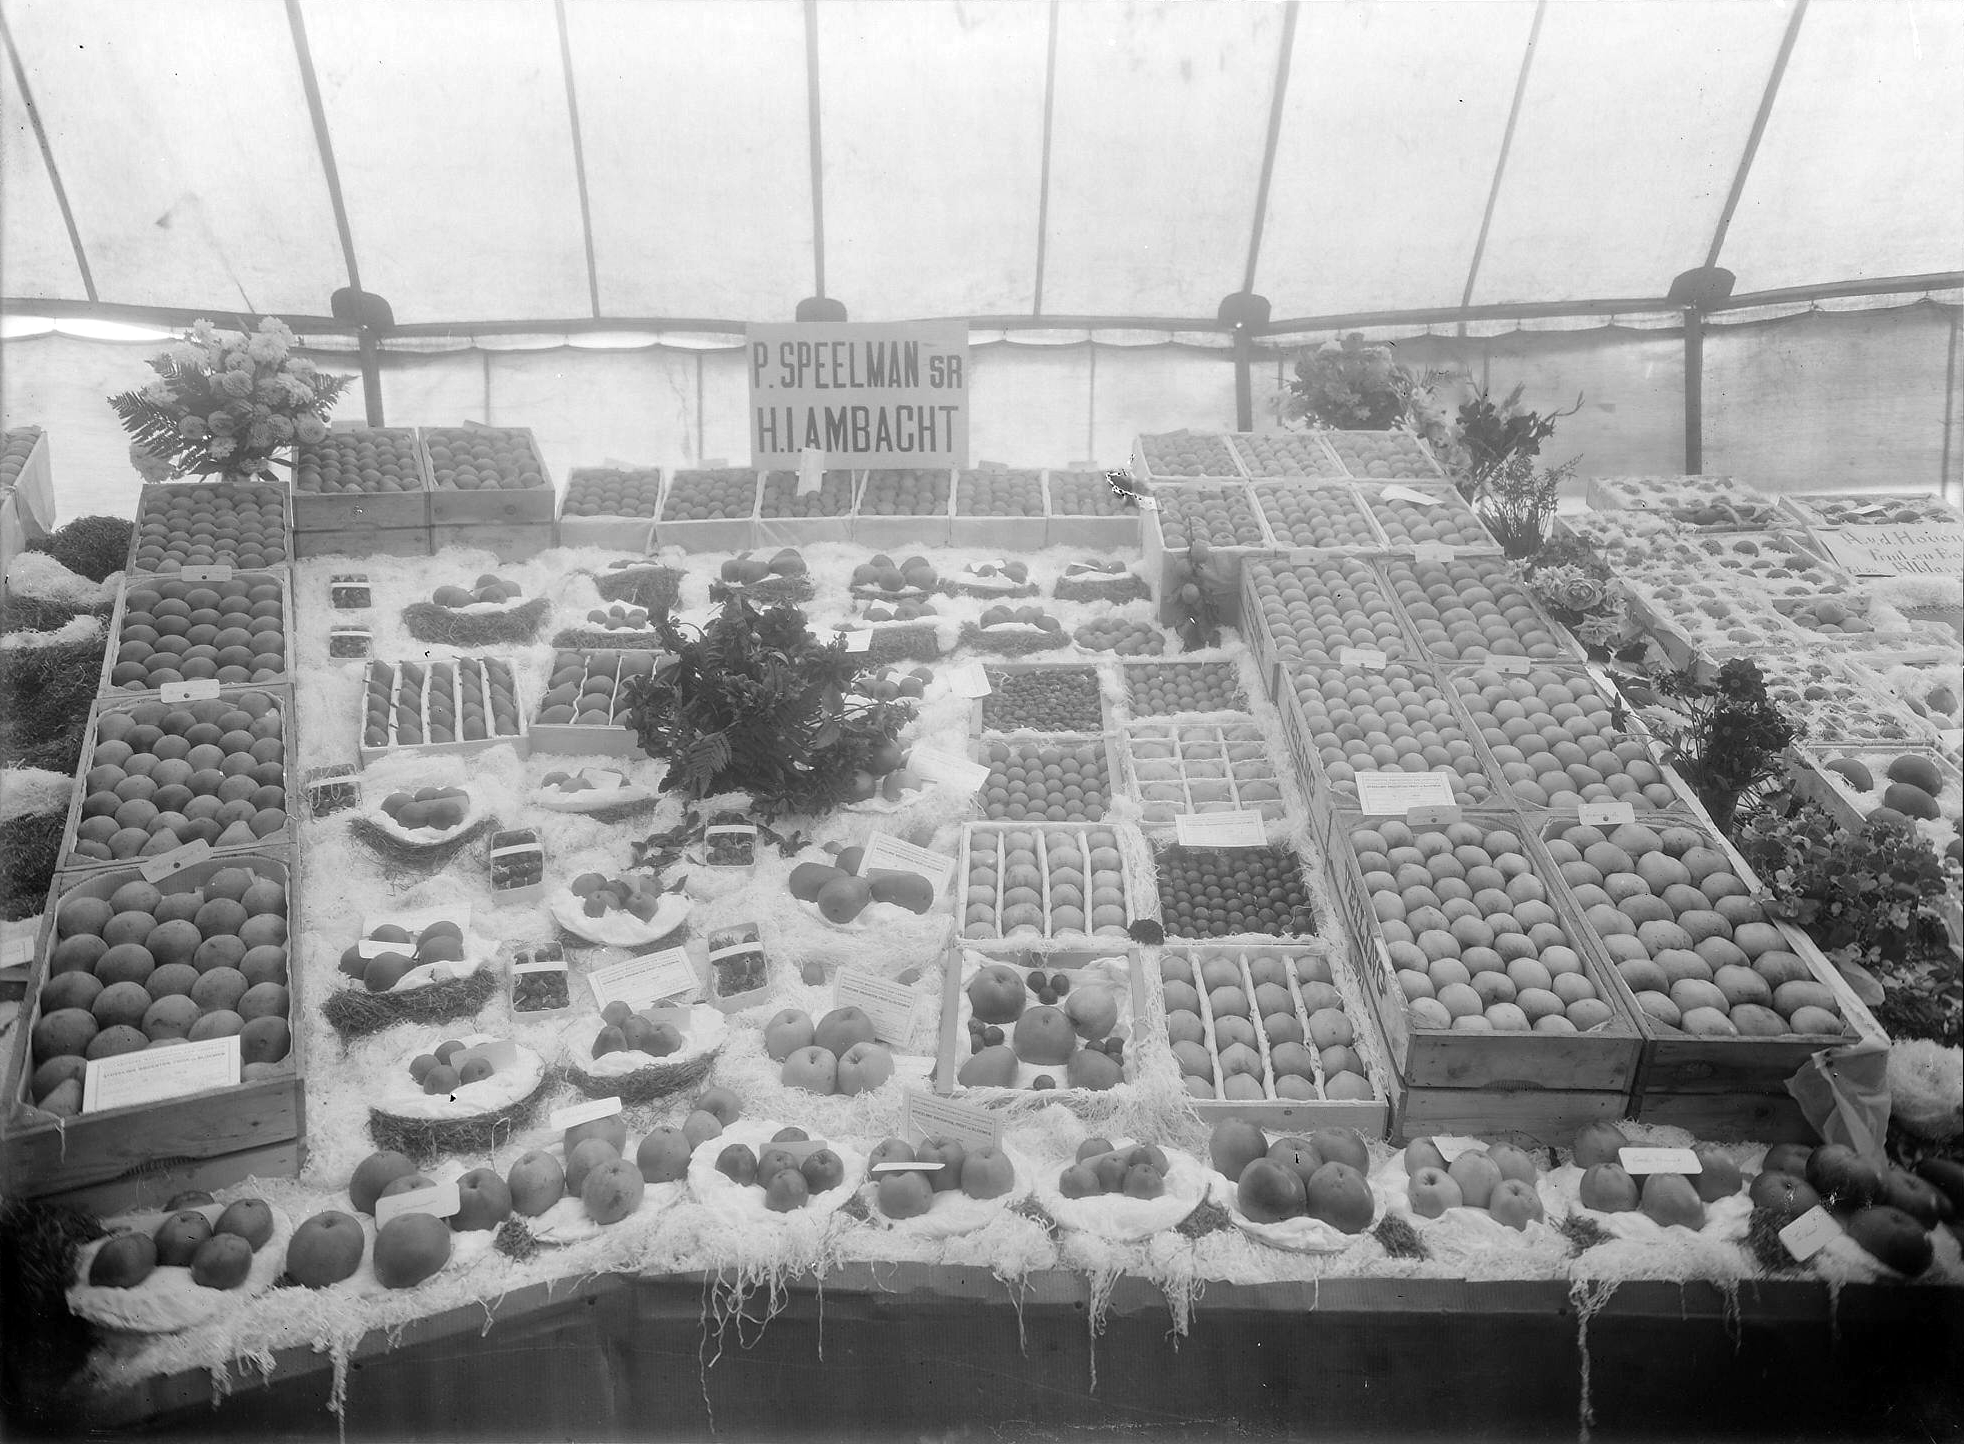 Stand fruitkweker P Speelman tentoonstelling Ridderkerk 2 januari 1927